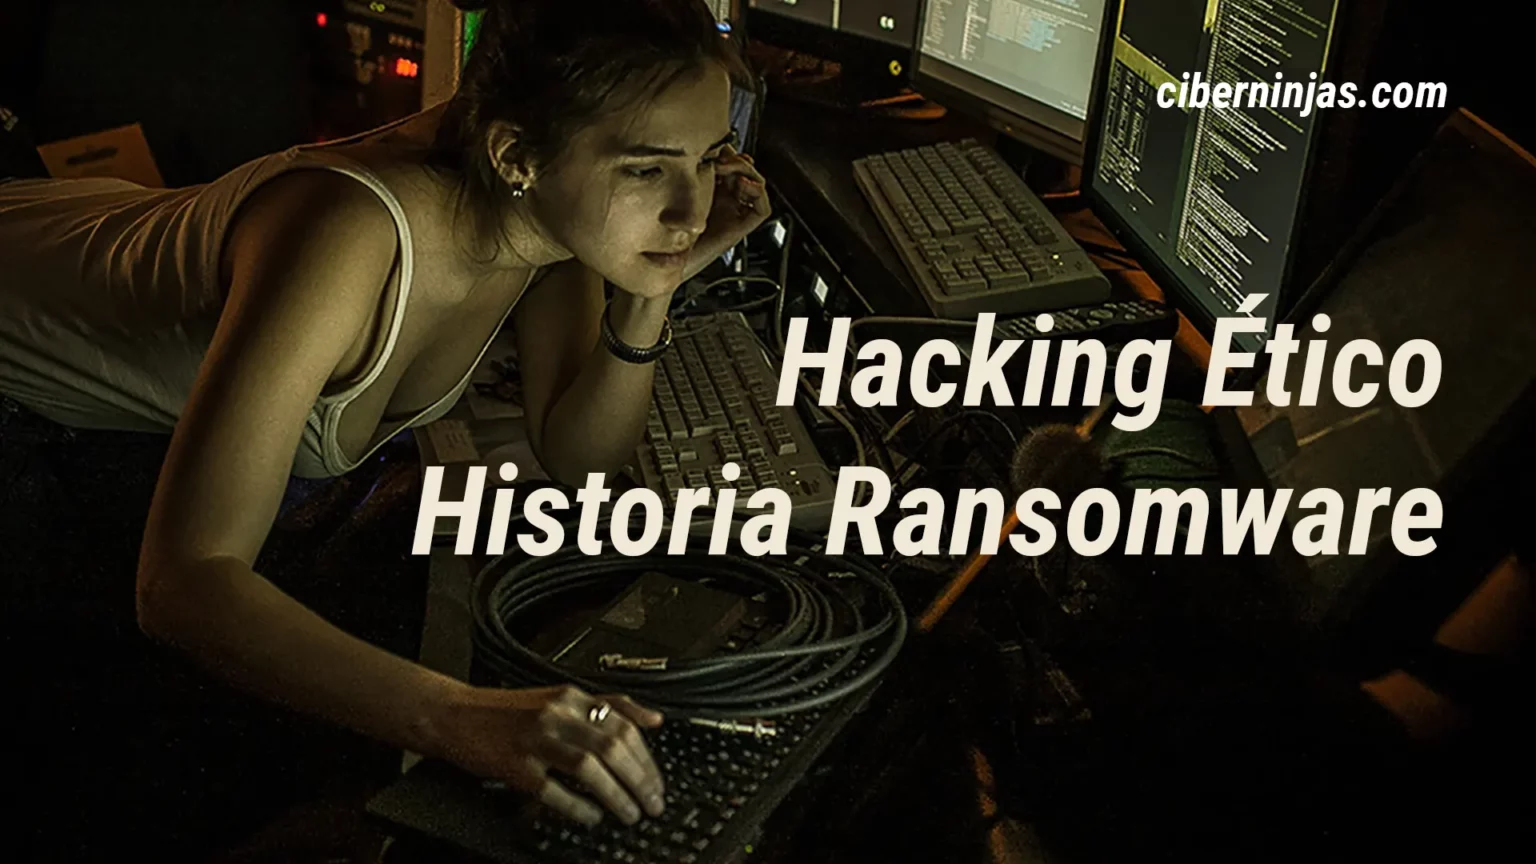 ¿Quieres ser un gran hacker ético? Entonces debes conocer la historia del ransomware en profundidad, aquí la tienes